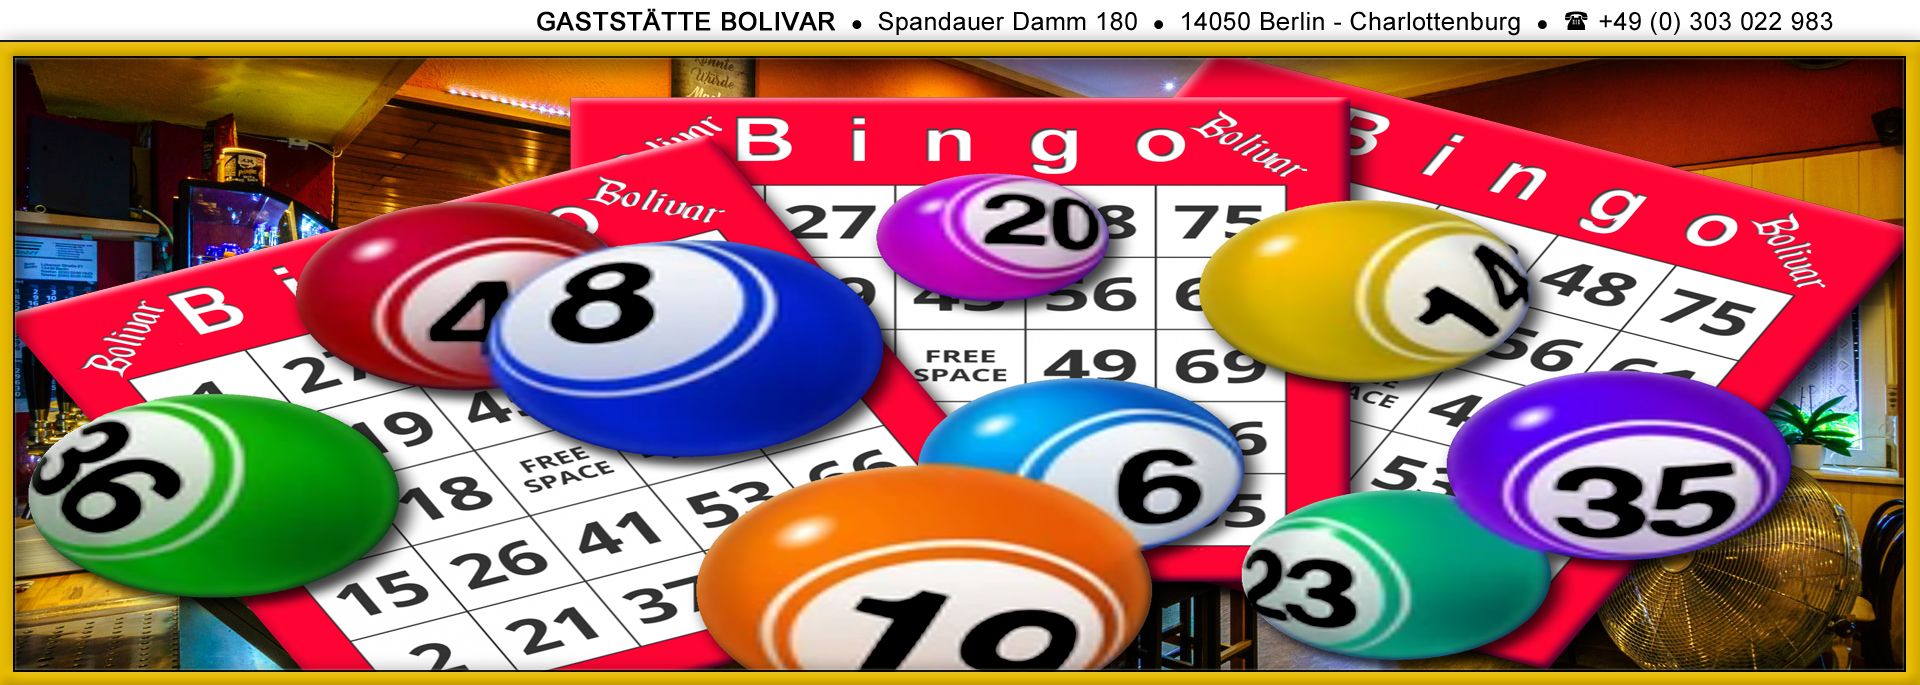 2024 Bingo jeden 1. Freitag im Monat - Spiel, Spaß und Spannung, 2025